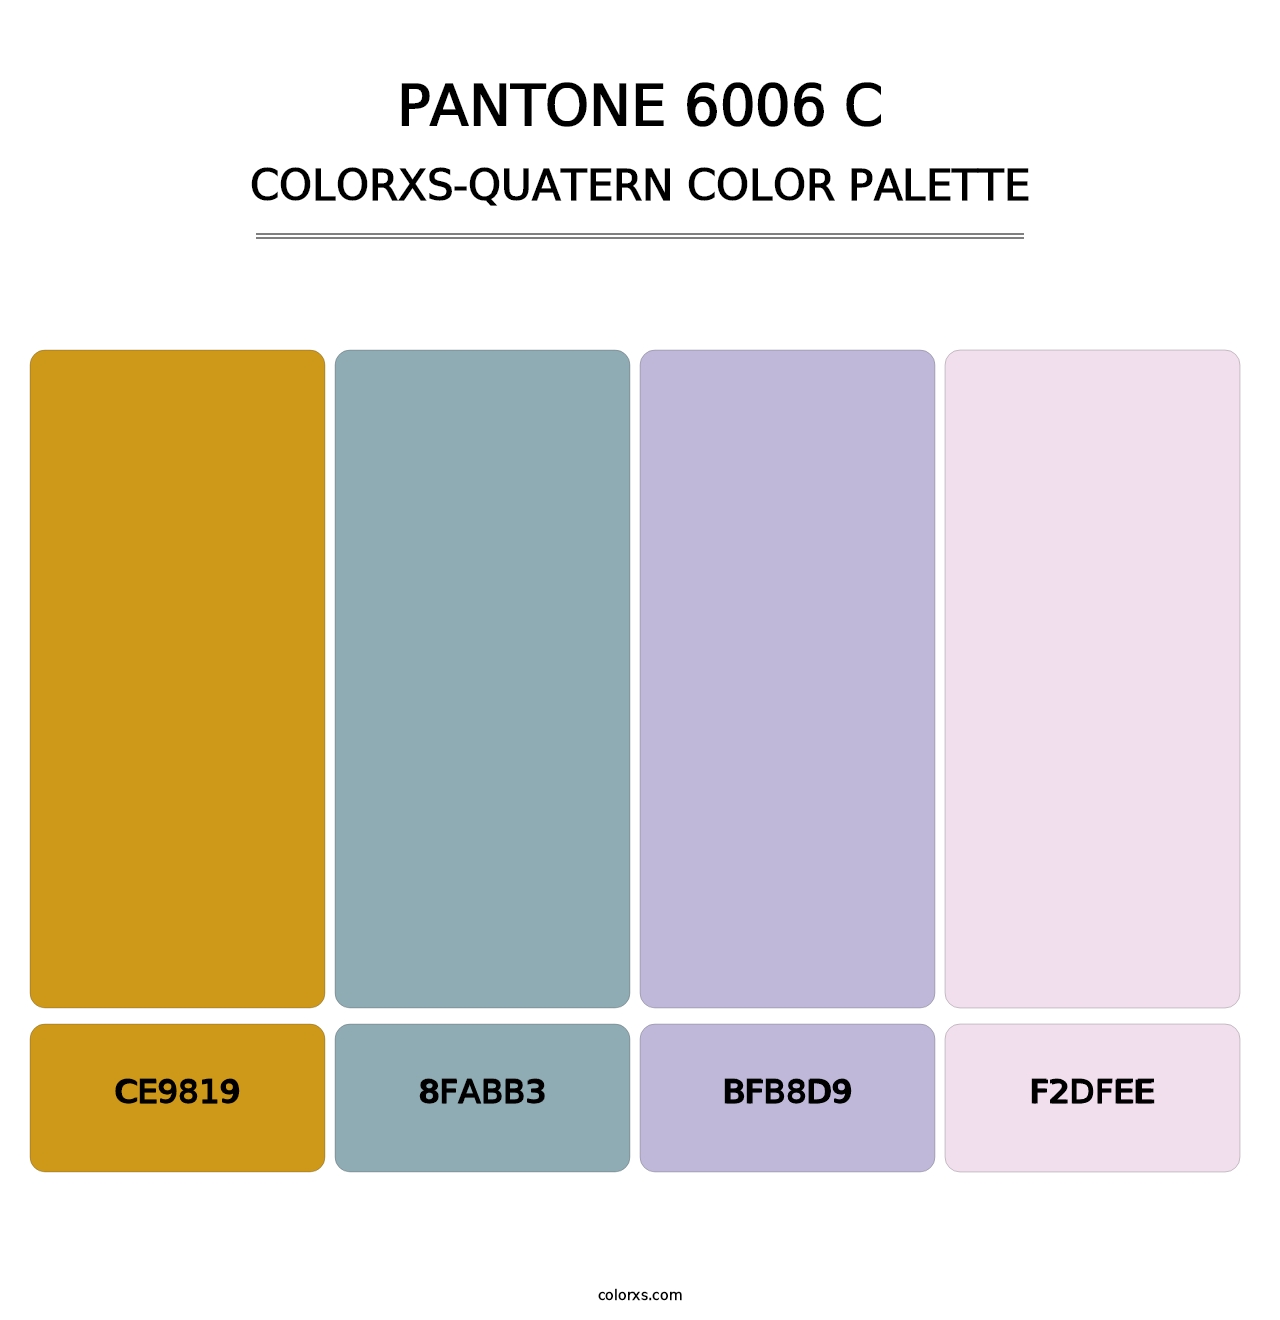 PANTONE 6006 C - Colorxs Quatern Palette